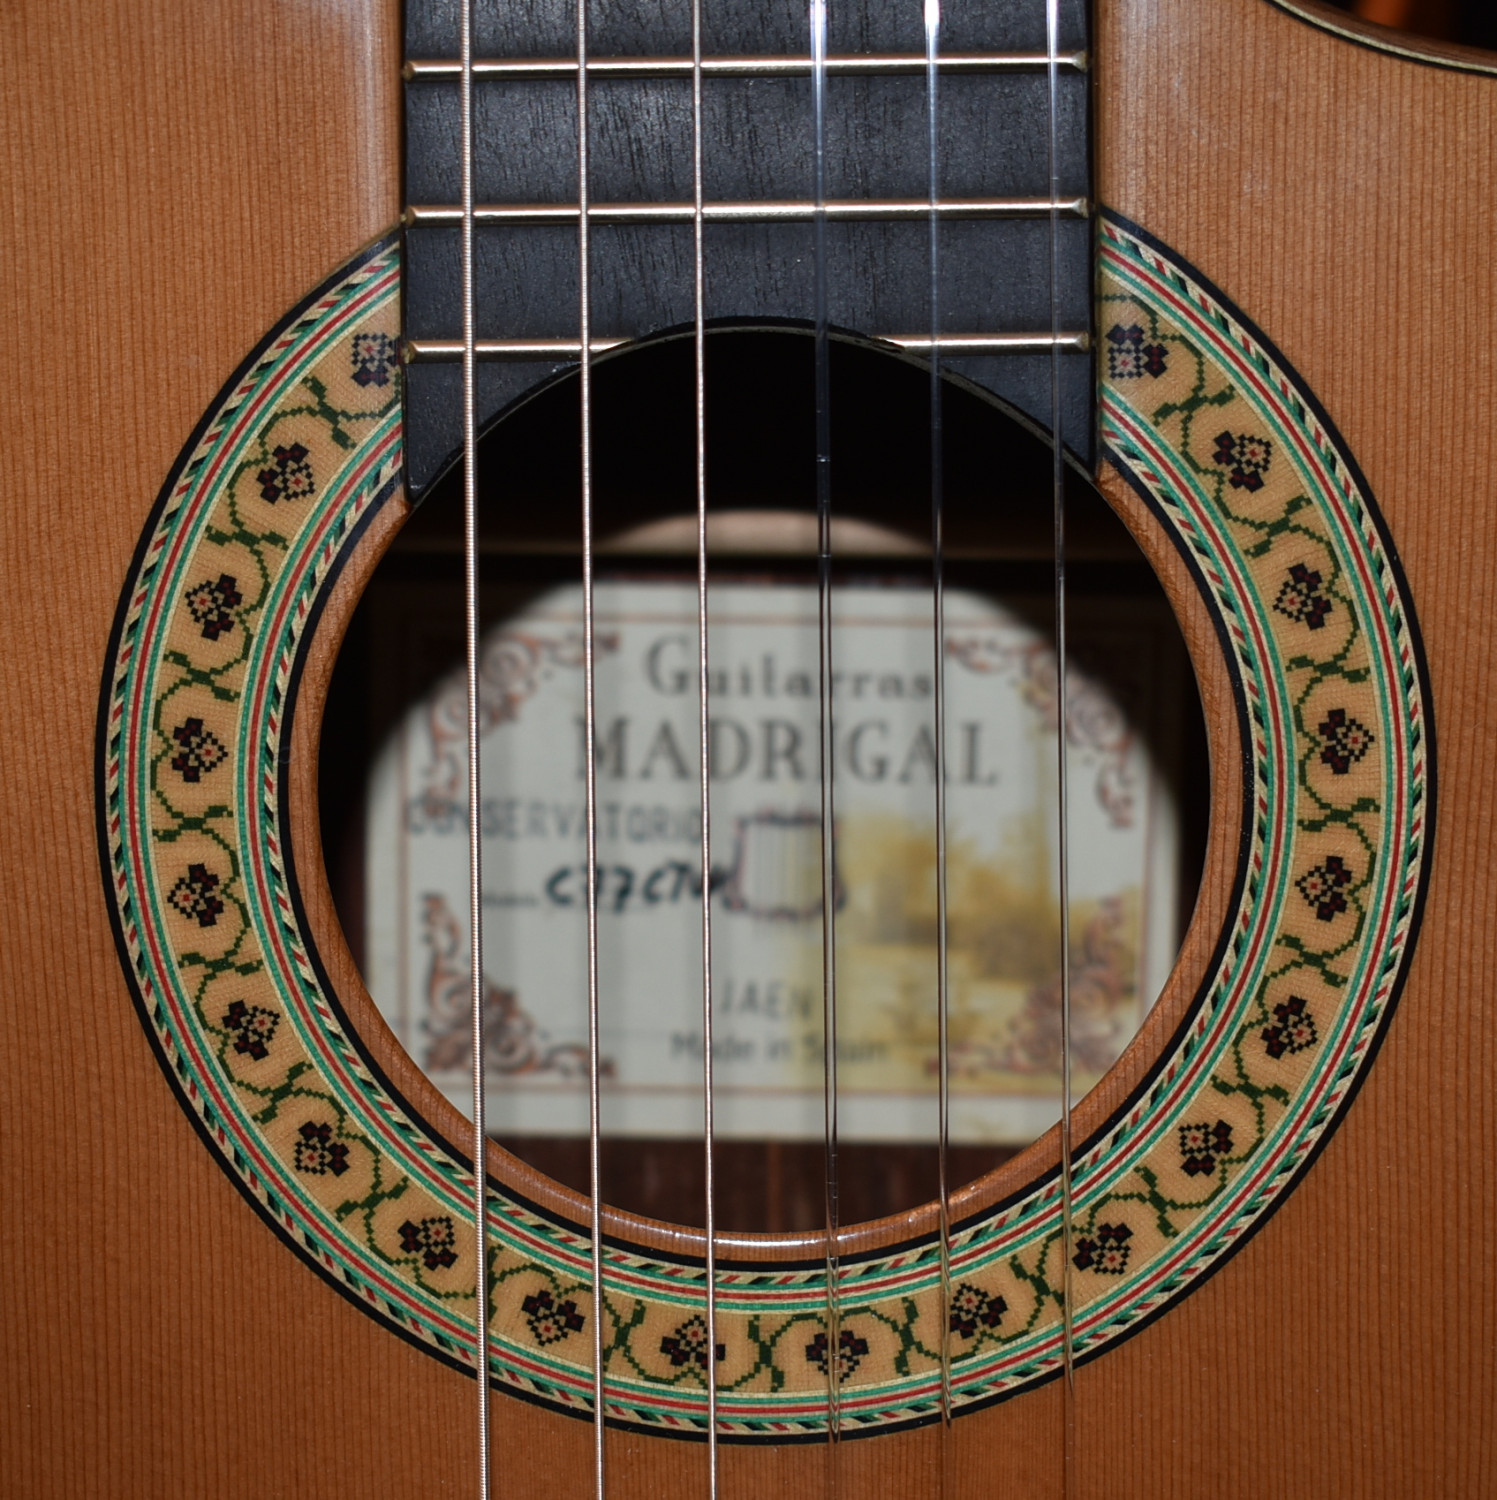 Guitarras Madrigal